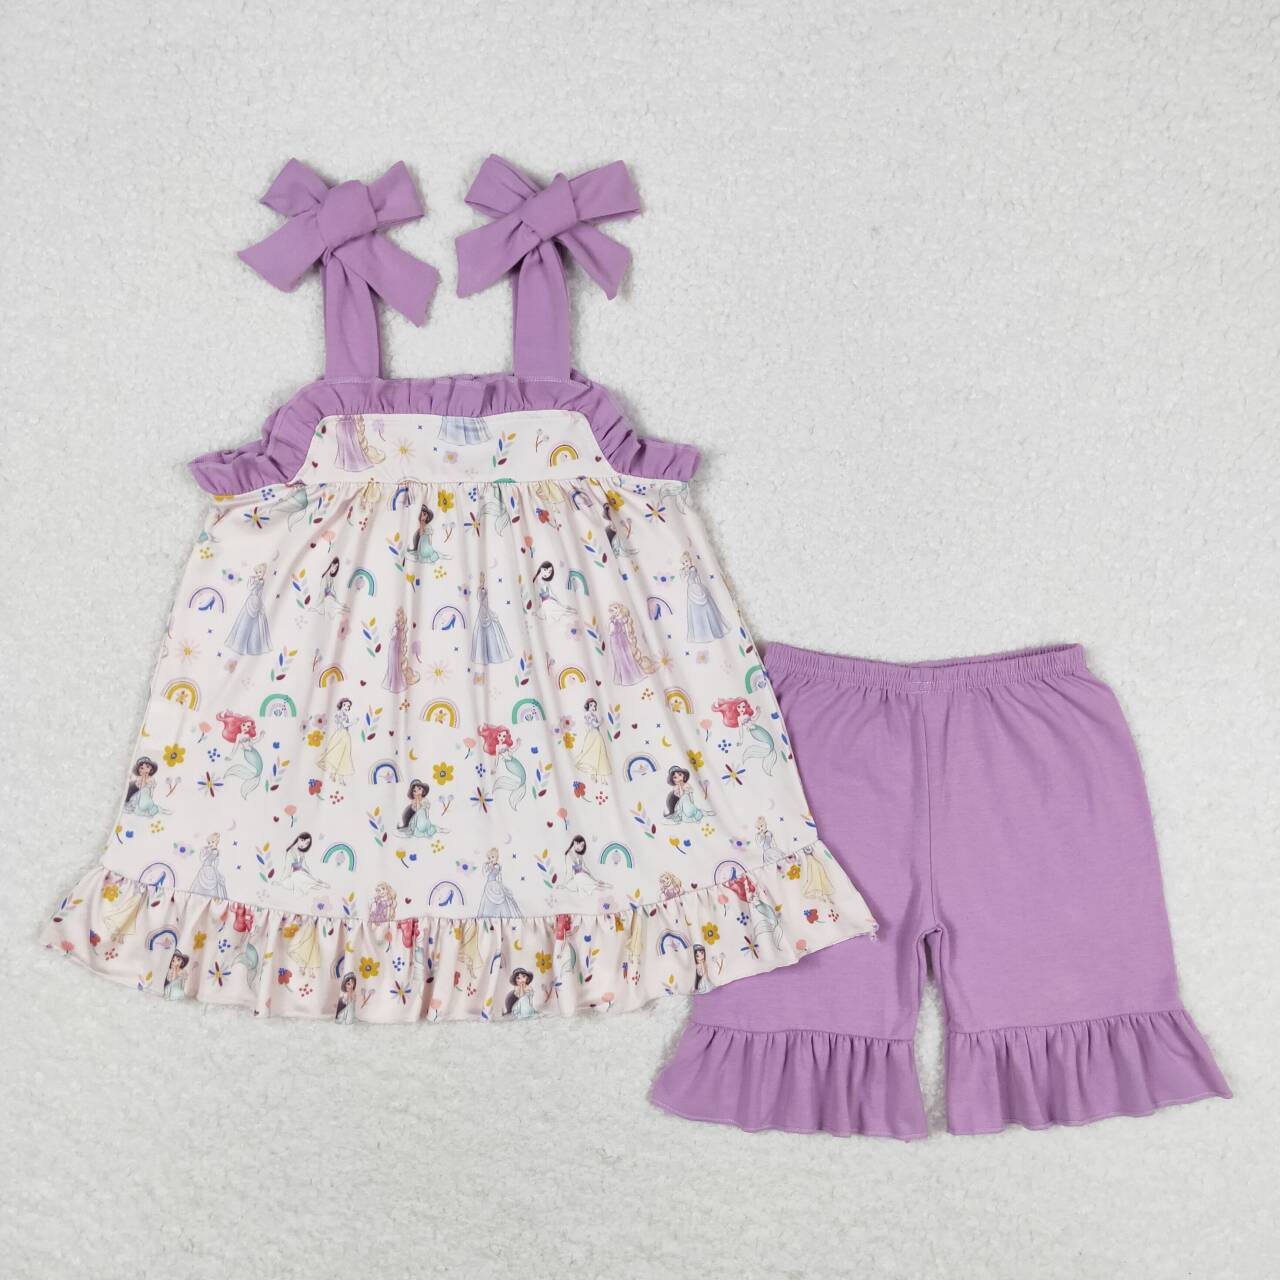 GSSO1044 Princess purple lace suspender shorts suit